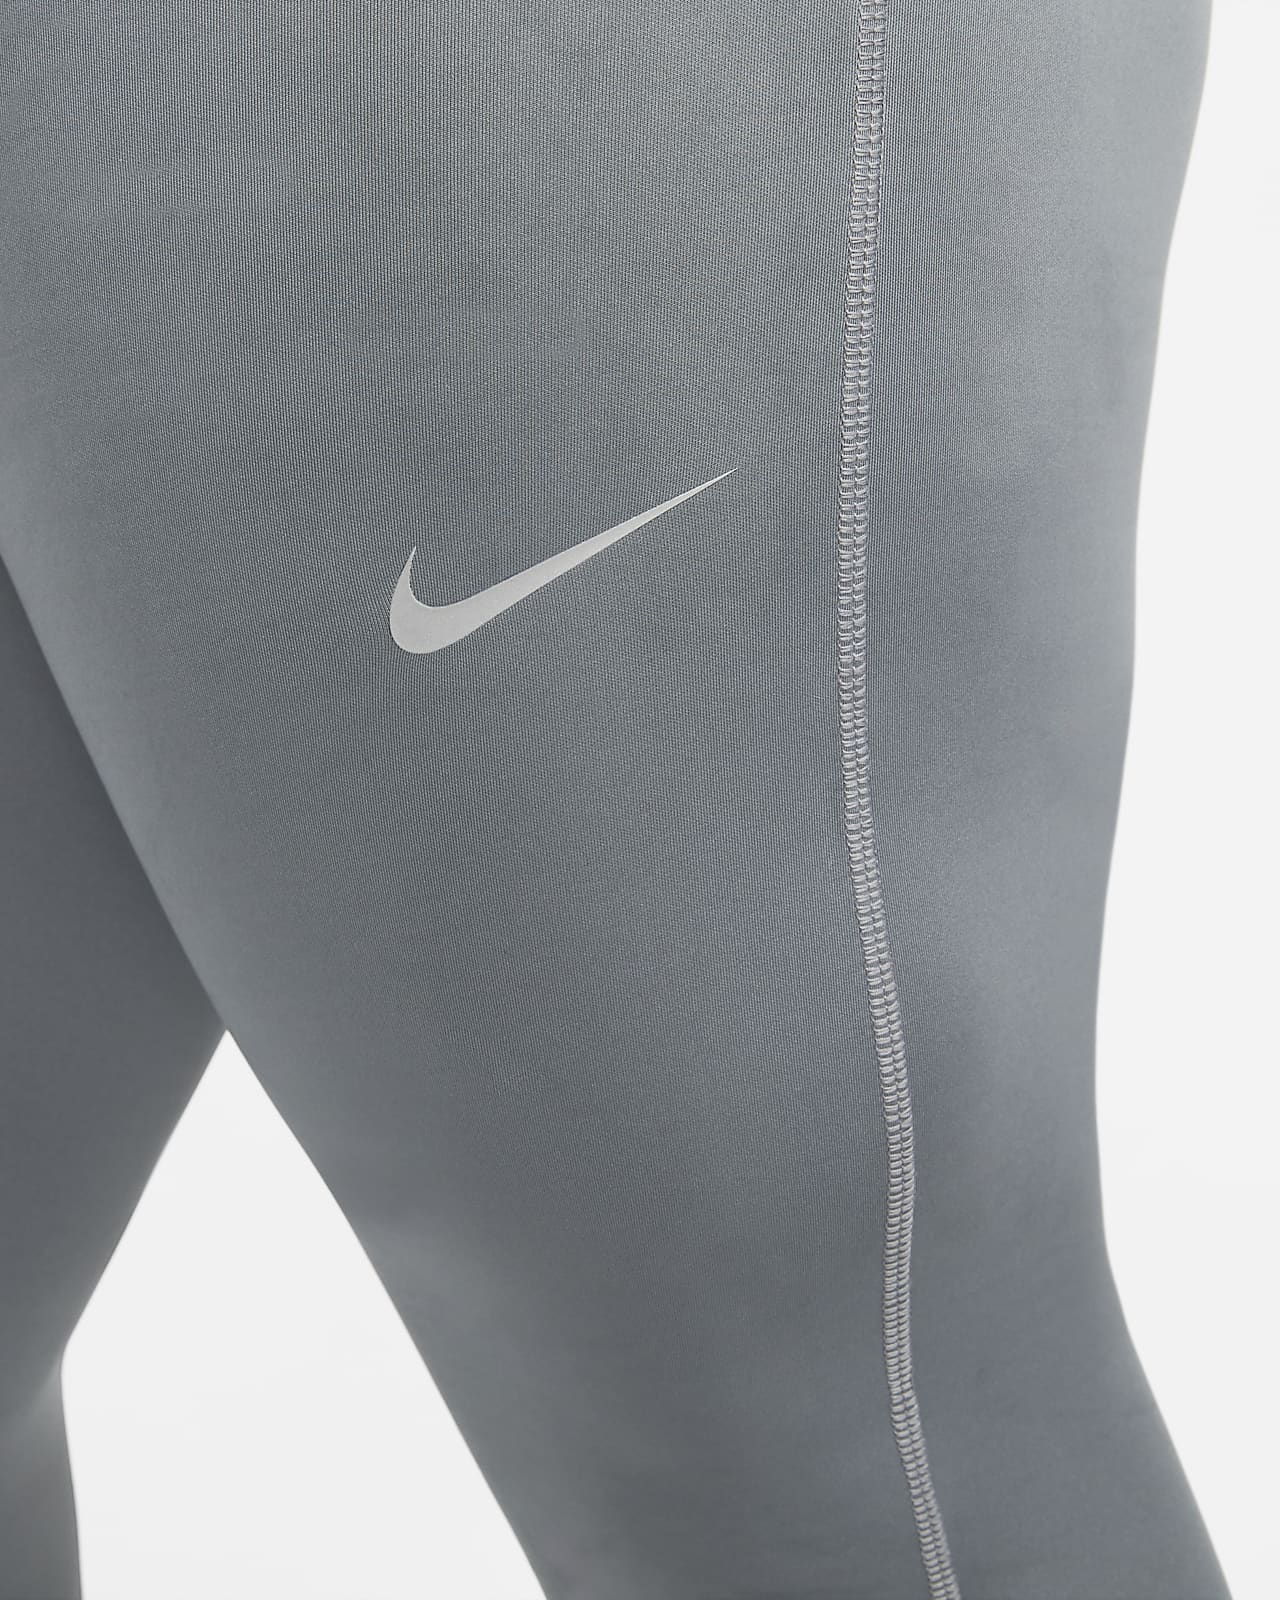 Nike Mens Repel Challenger Tight, Running